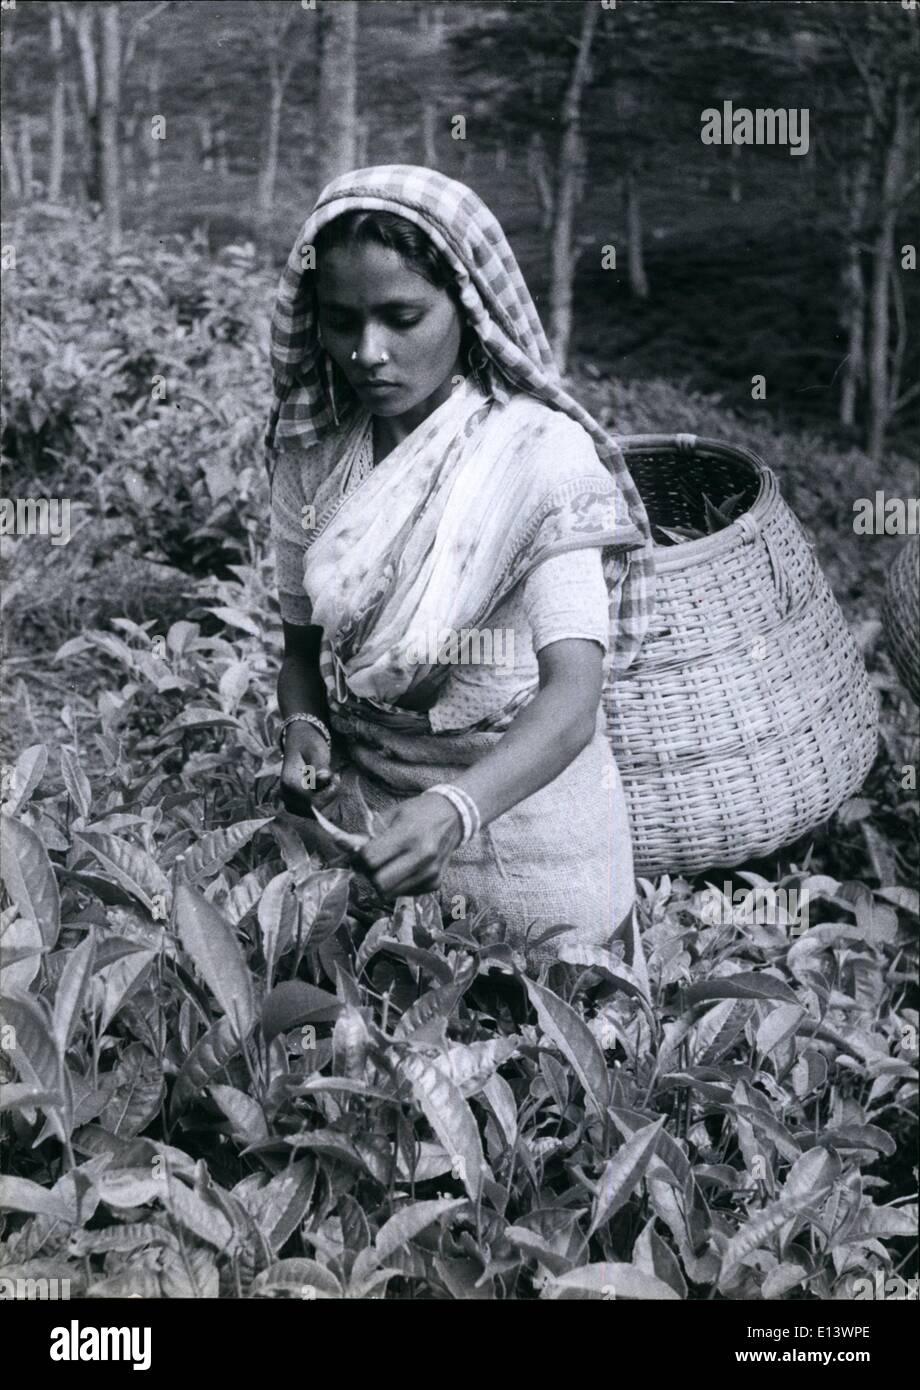 27. März 2012 - eine junge Tee-Auswahl von Indien, bei der Arbeit auf dem Hügel von einer Plantage in Kerala, kontrolliert Indiens einzige kommunistische Staat. Sie greift zwischen 70-100 £ pro Tag und bekommt ich repee. 5 Annas pro 16 lbs. Um die 16 lbs zu erhalten, muss sie nur die Knospe und zwei Blätter von der Spitze des jeder Tee Strauch, nehmen damit sie Meilen durch die Plantage geht immer bergauf. Nach ihrem Körbchen voll ist zurück She trägt es lange Strecken in der Teefabrik. Stockfoto